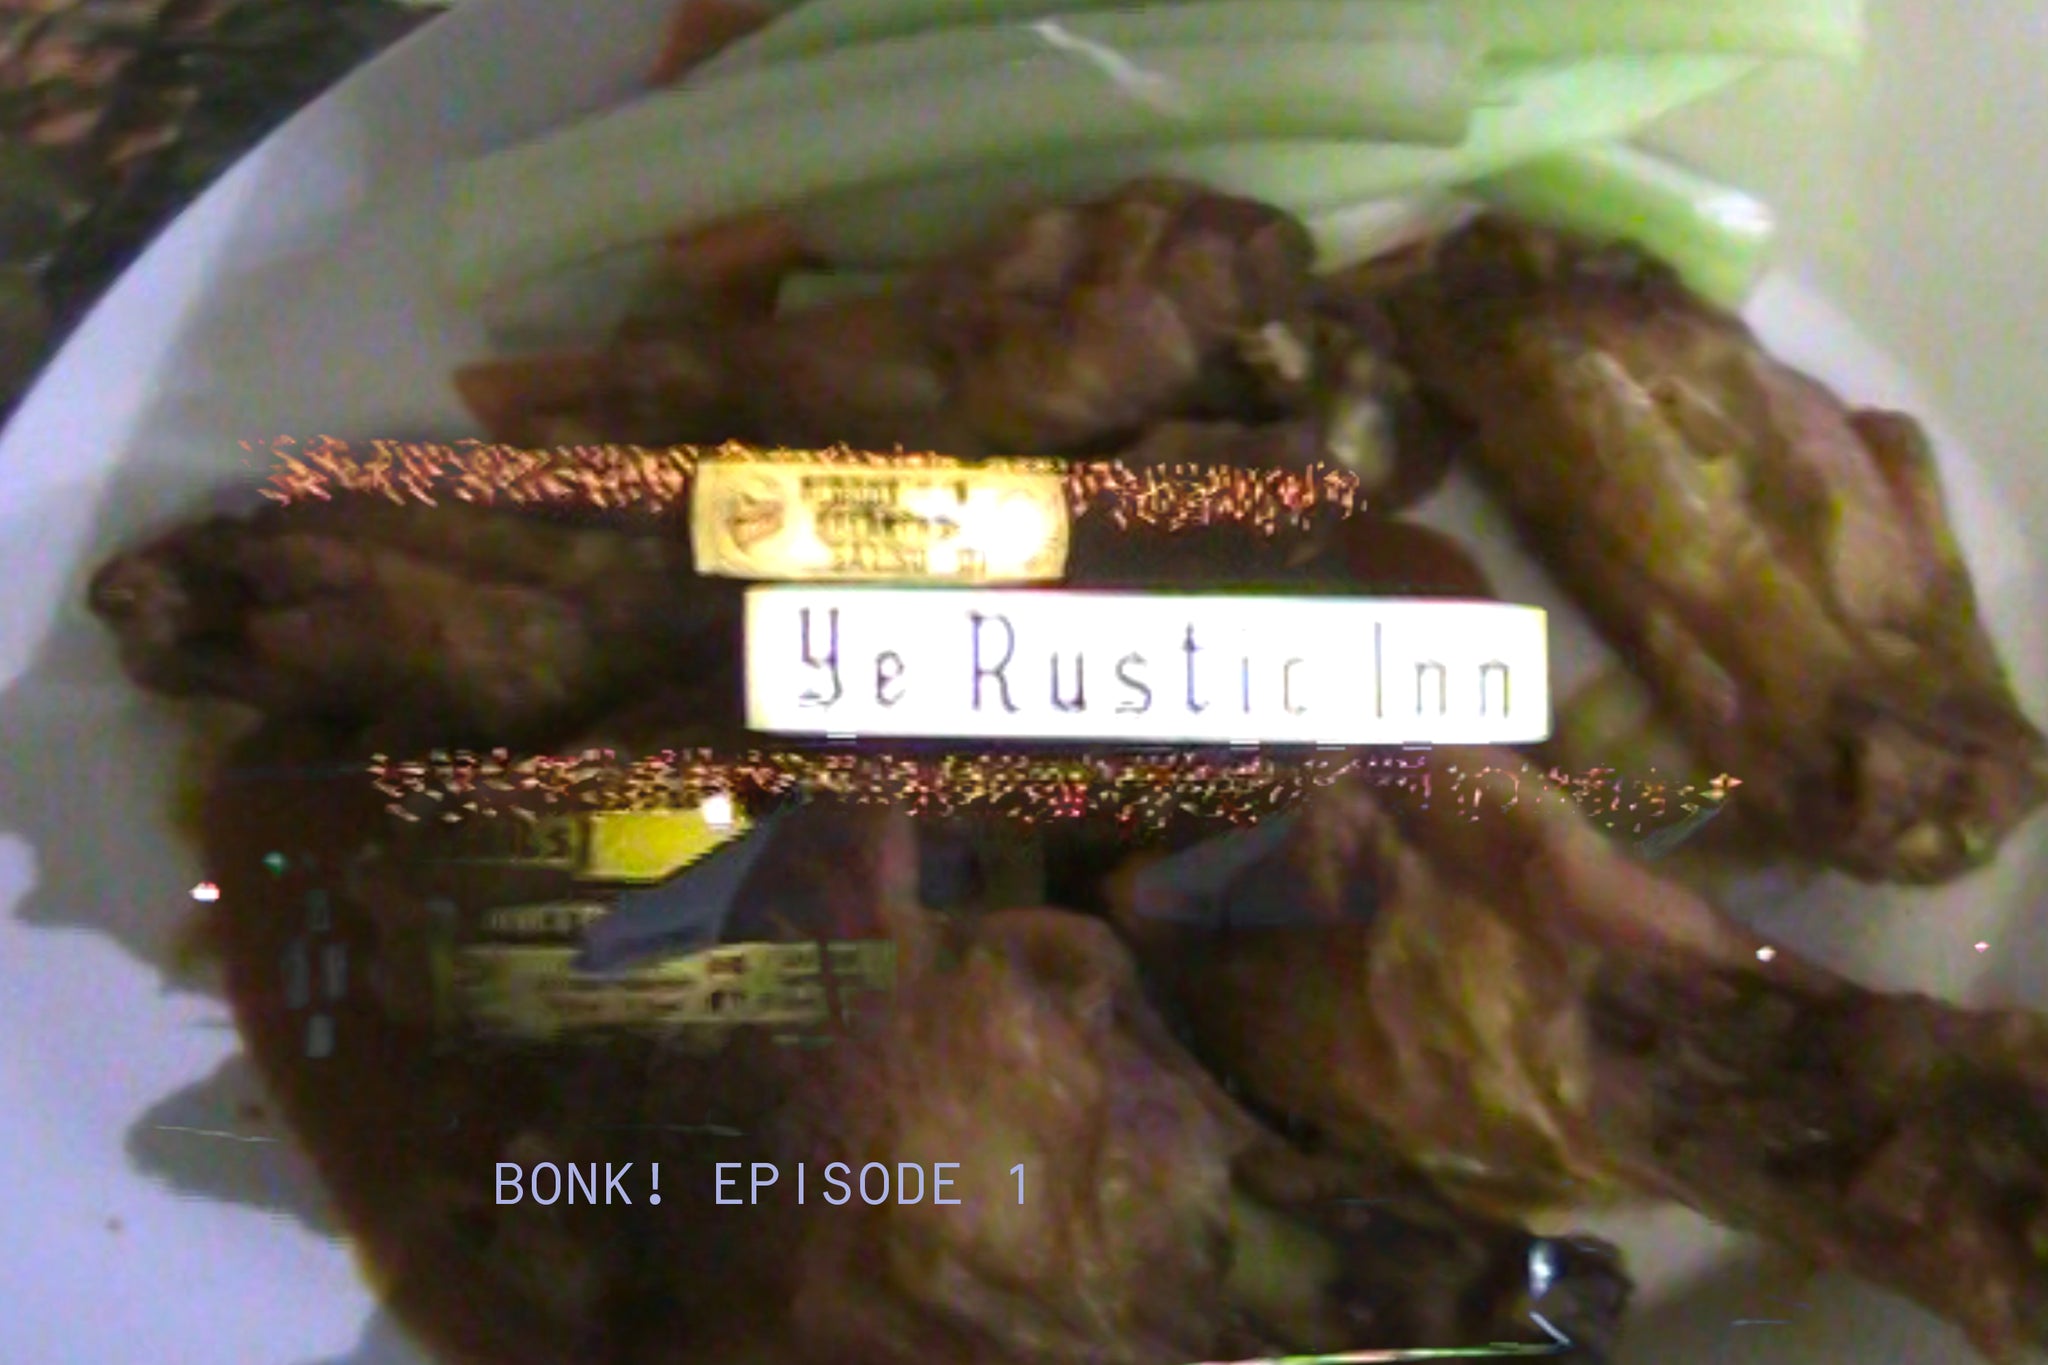 BONK! EP 1: Ye Rustic Inn